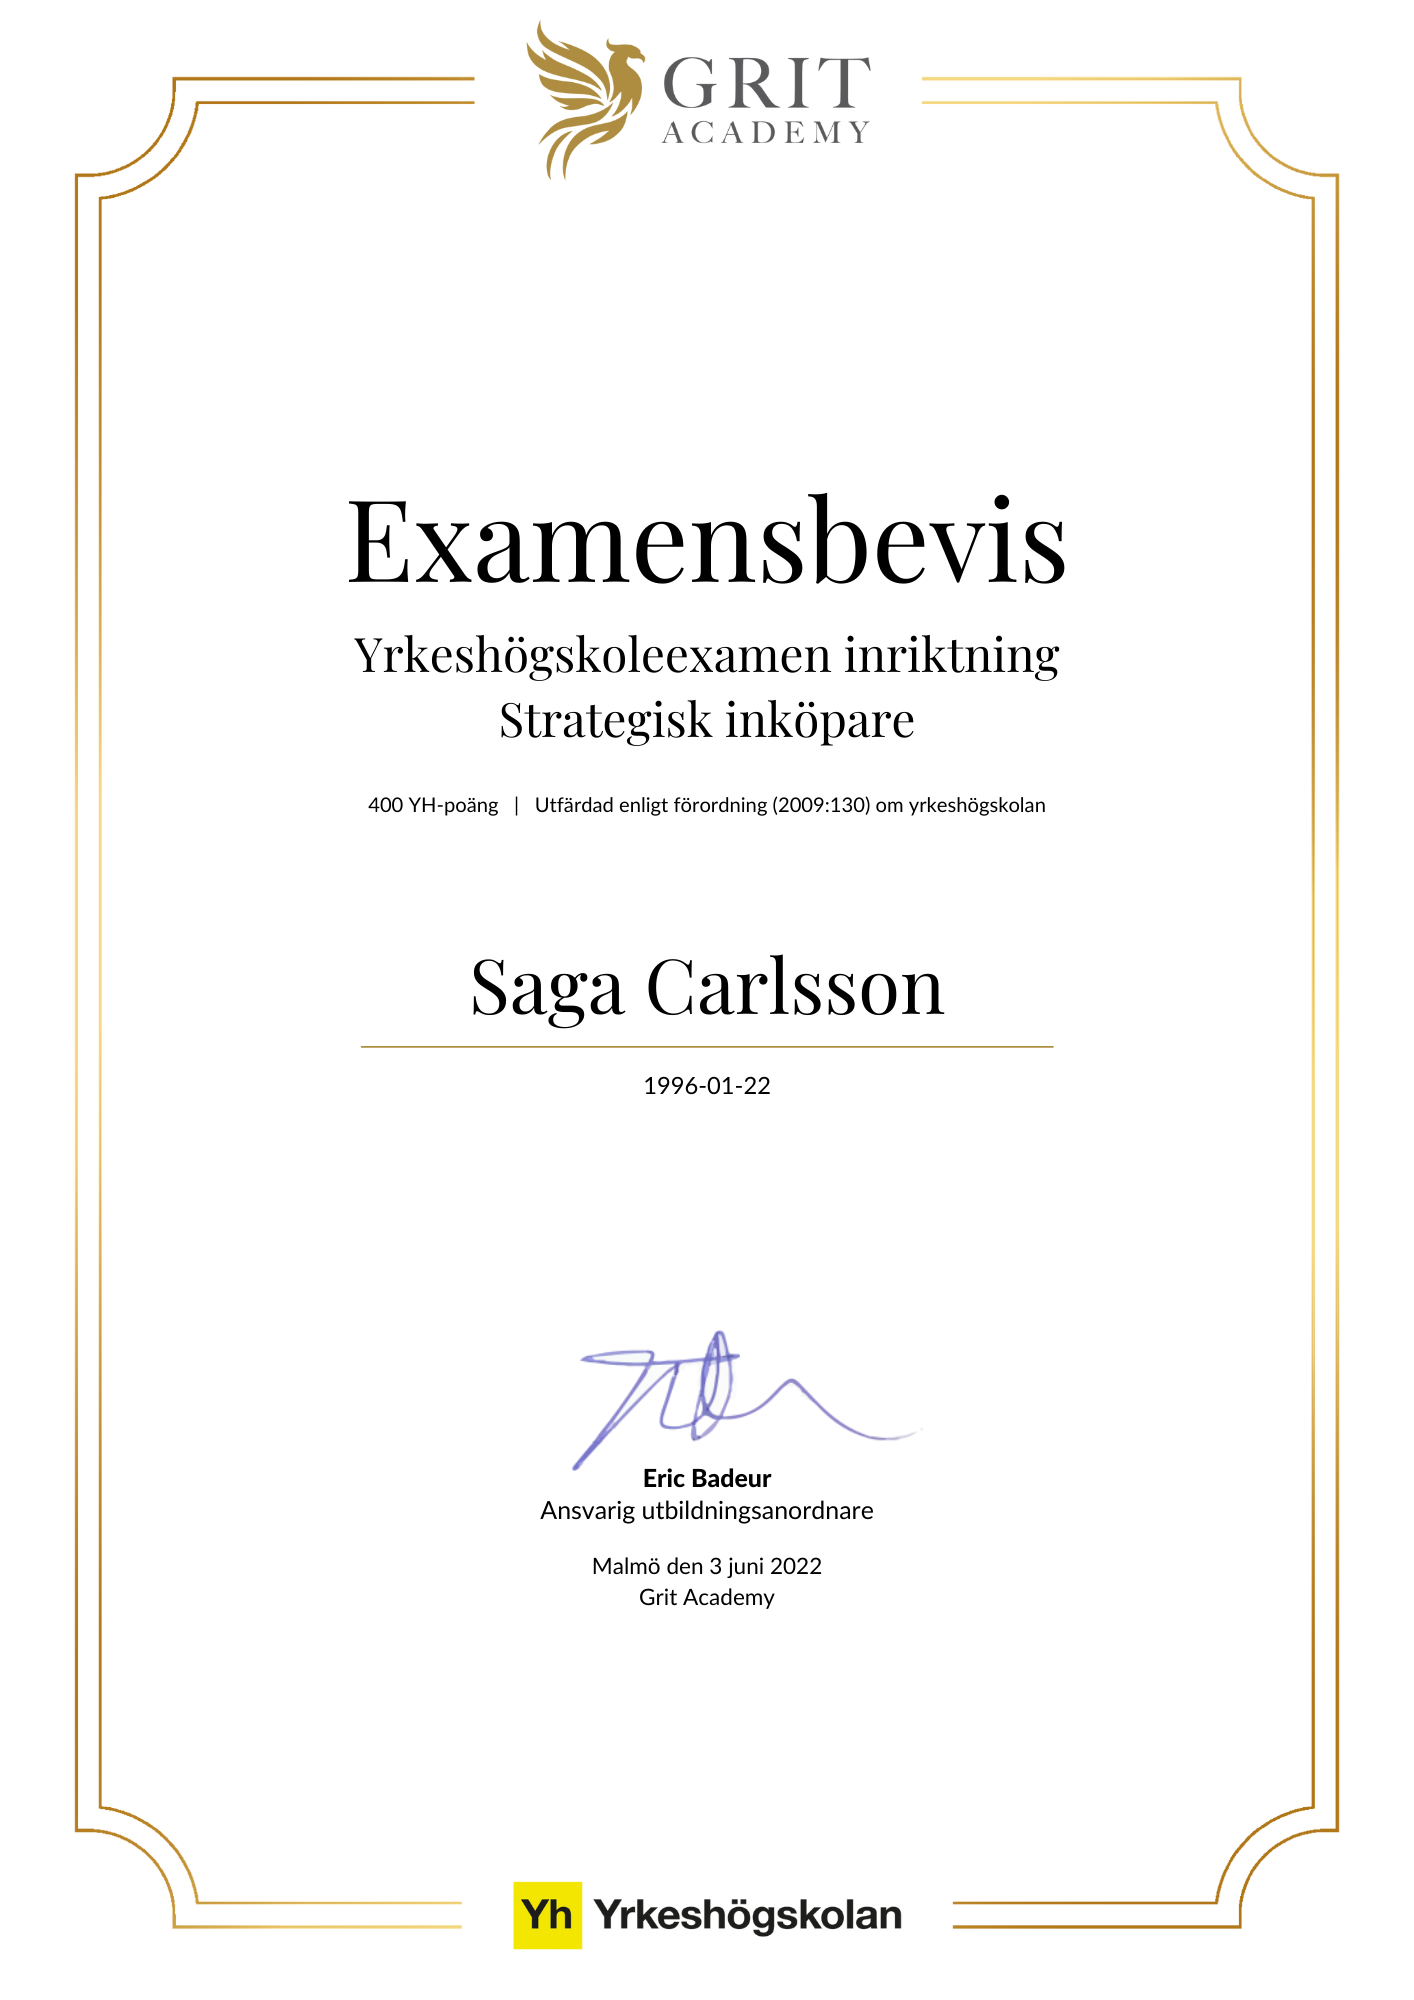 Examensbevis Saga Carlsson - 1